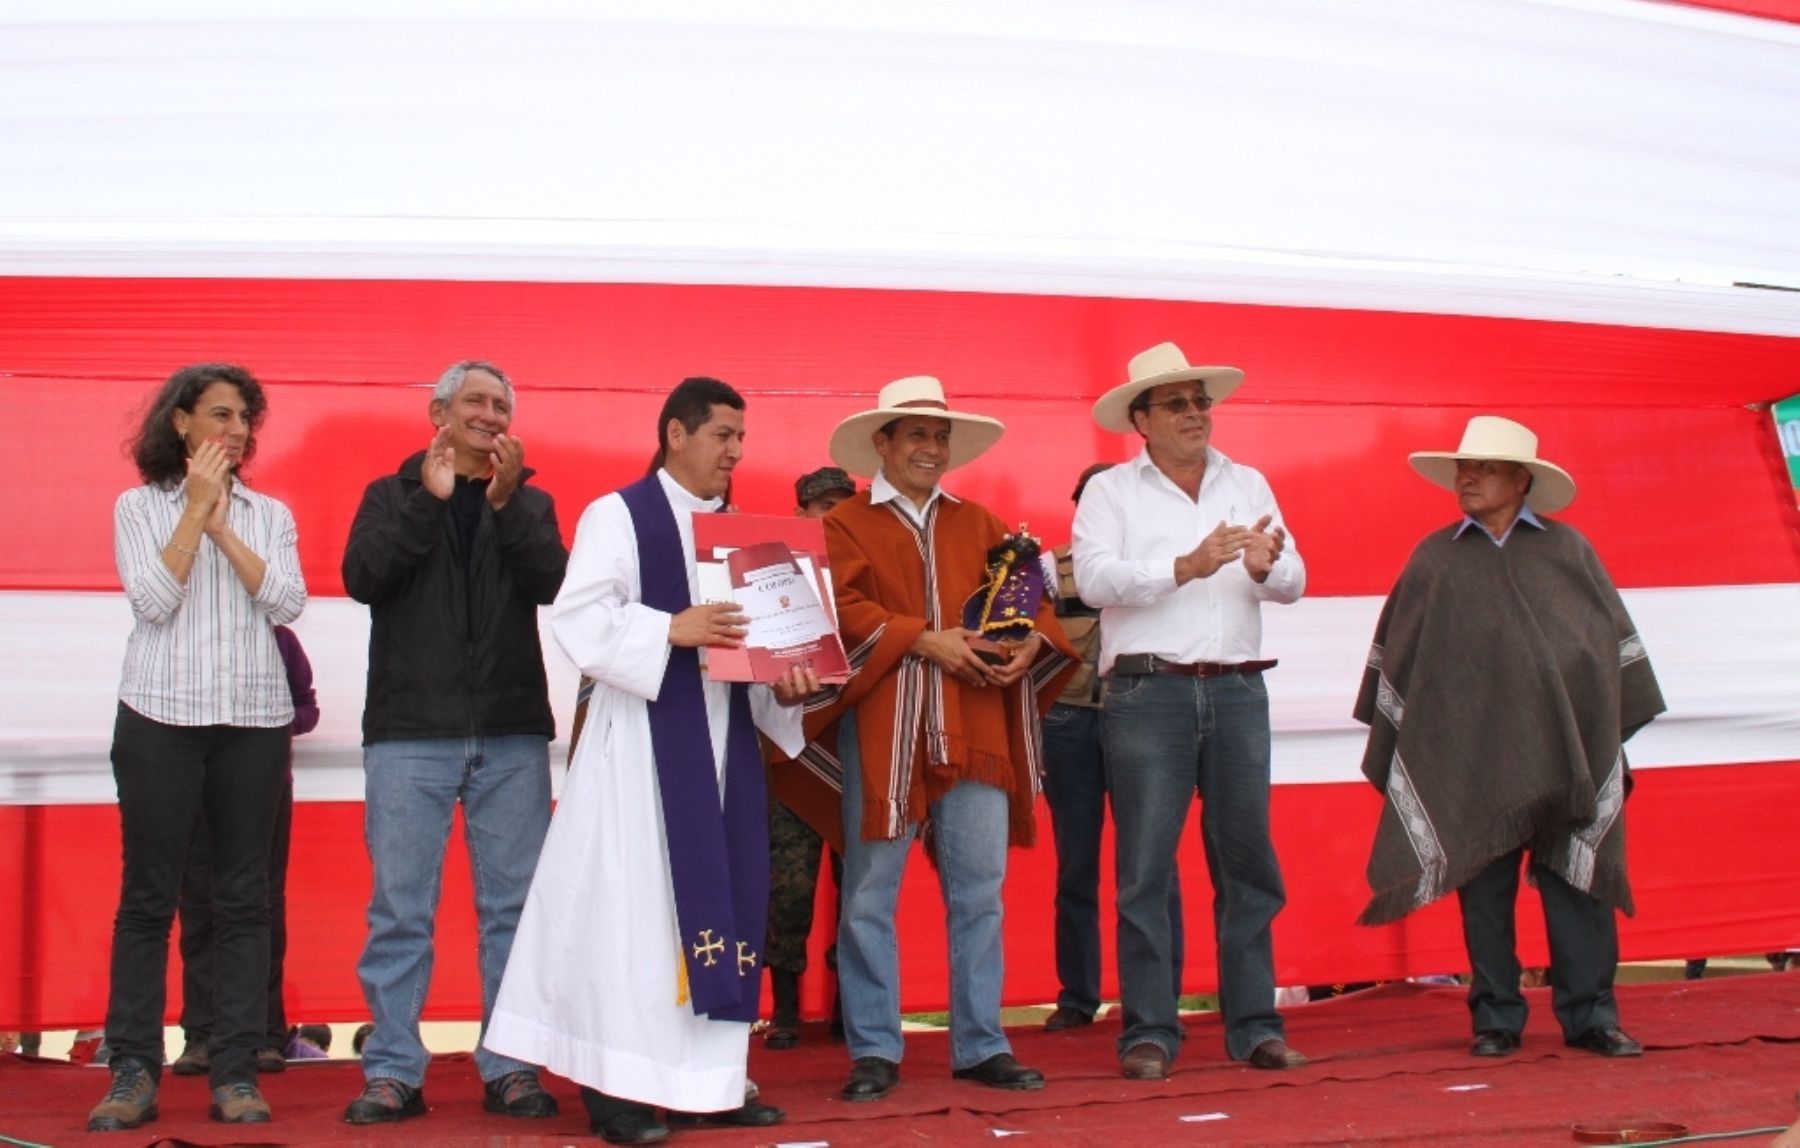 El párroco del santuario del Señor Cautivo de Ayabaca, Wilmer Niño Merino, entregó una réplica de la imagen del santo patrón al presidente Ollanta Humala.